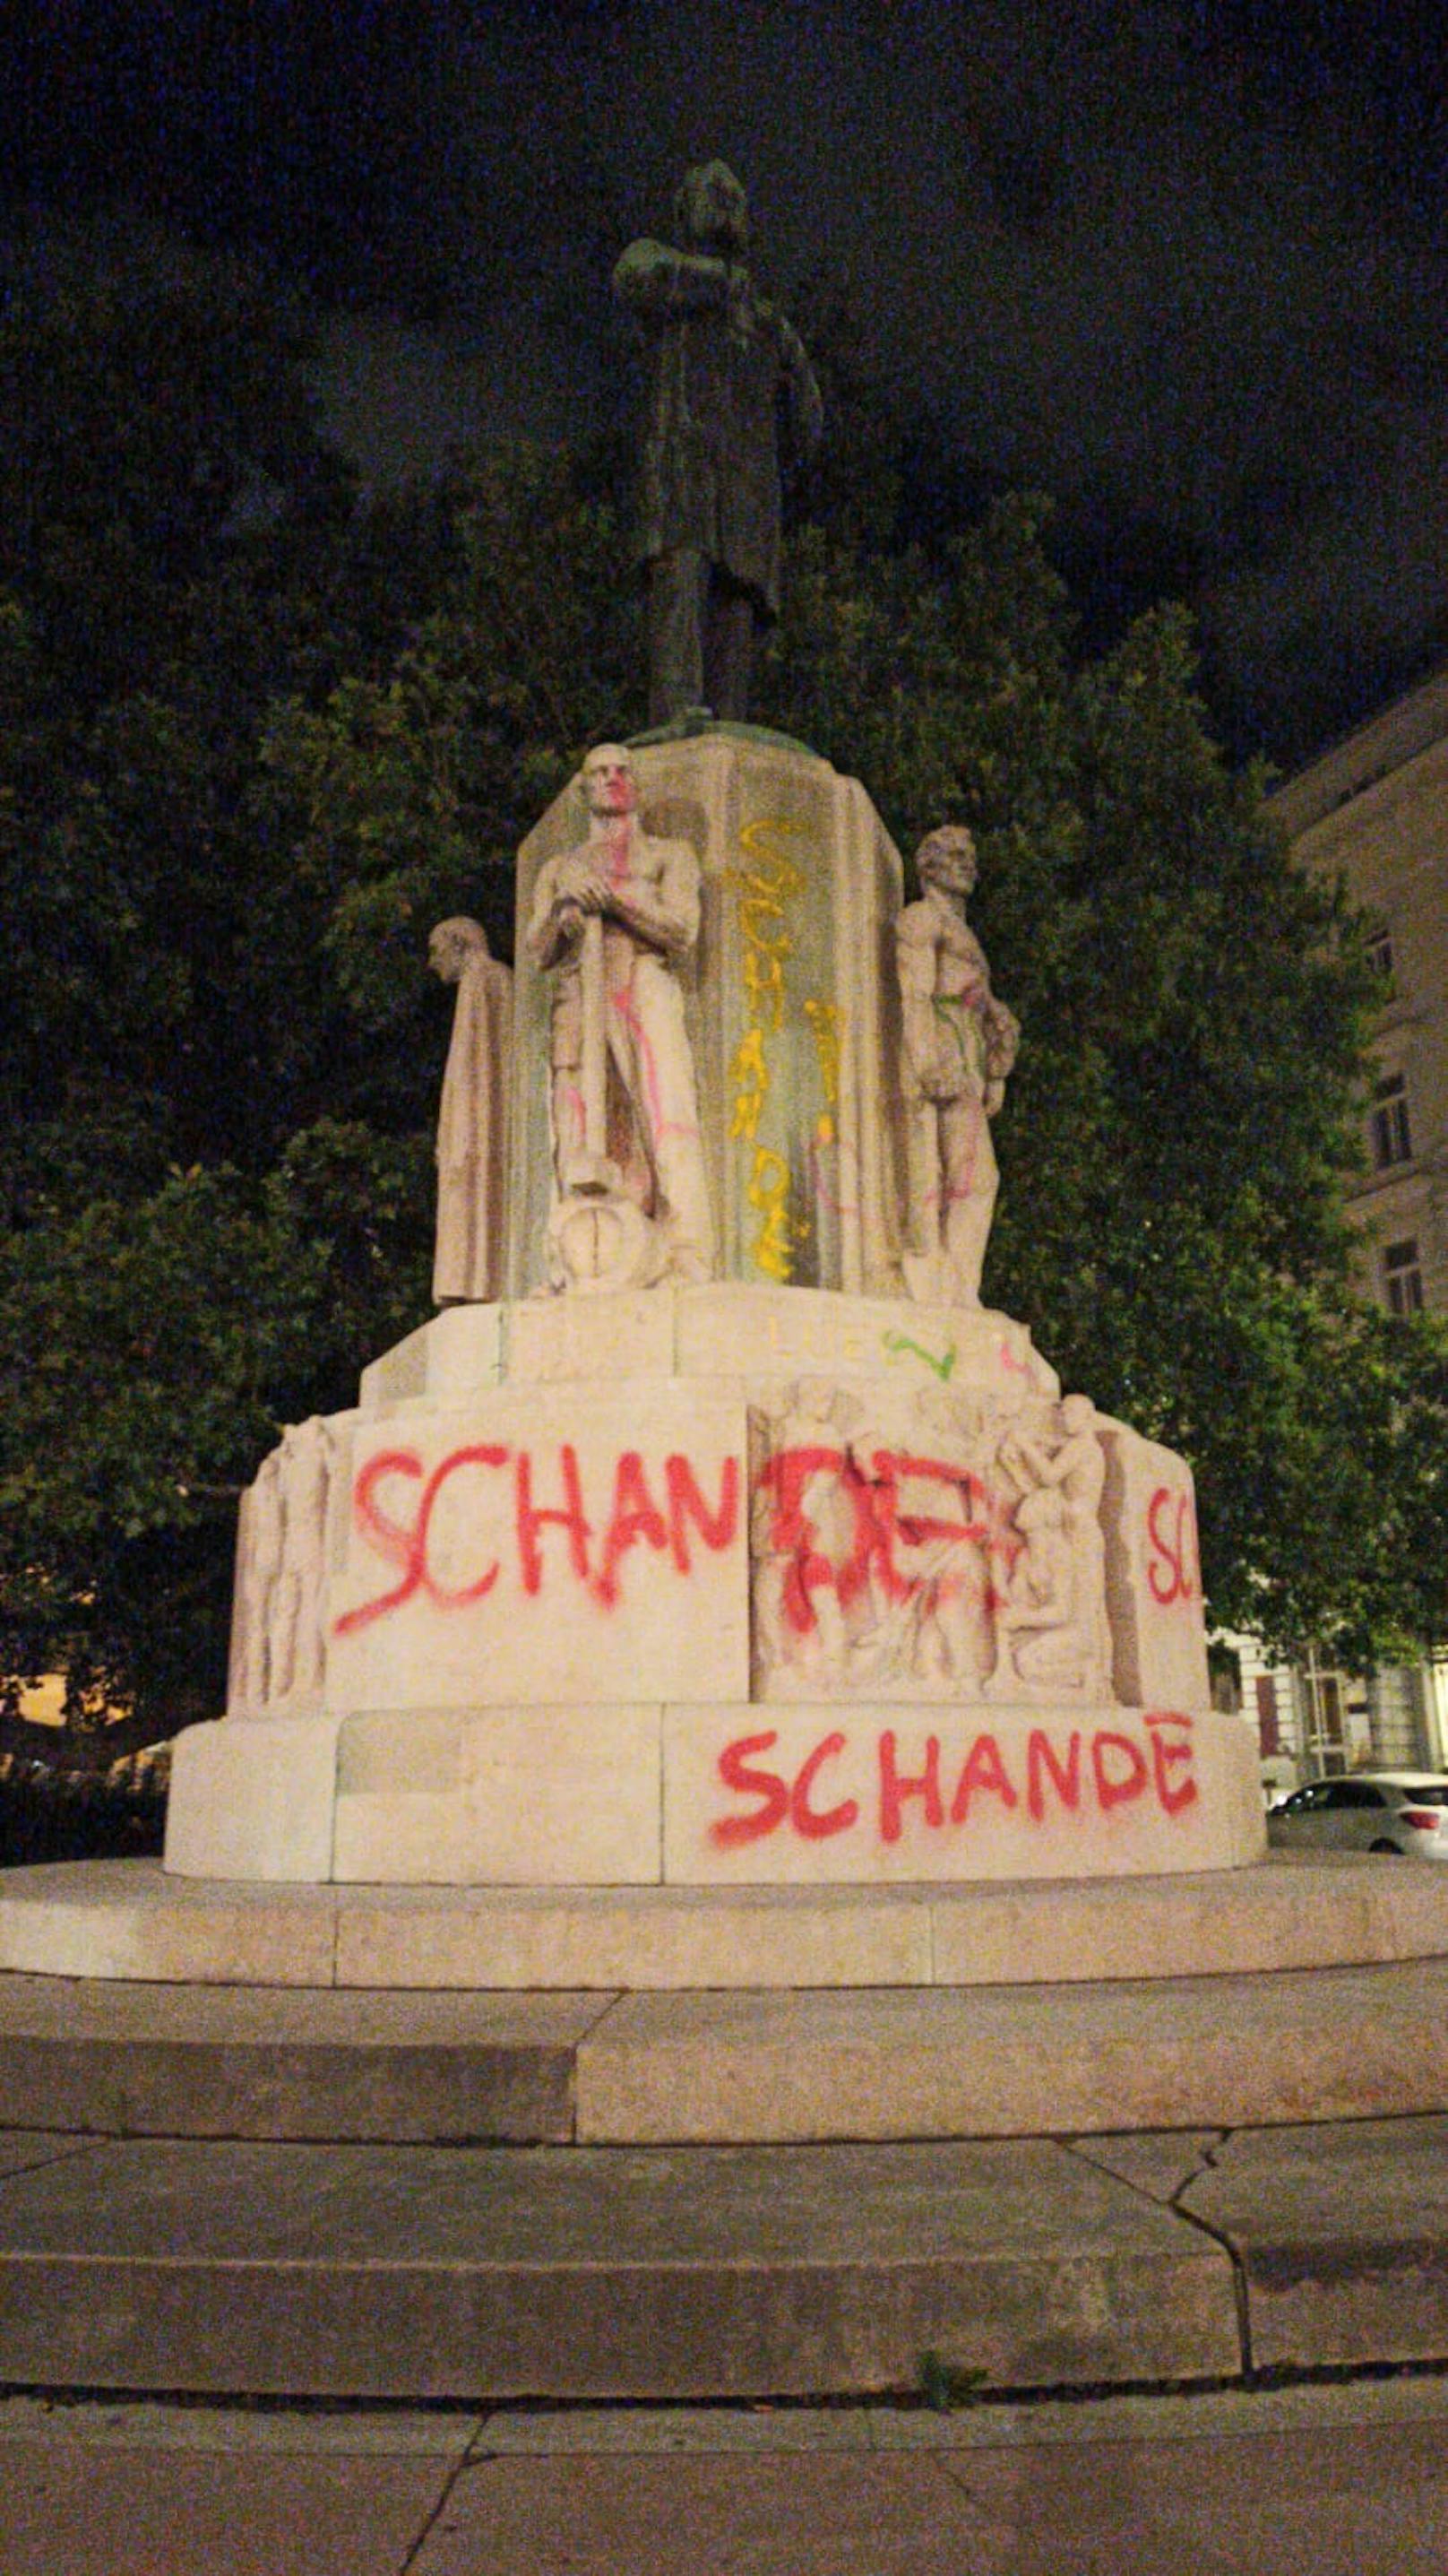 Das Lueger-Denkmal in der Wiener Innenstadt wurde abermals beschmiert, diesmal mit "Schande"-Schriftzügen.